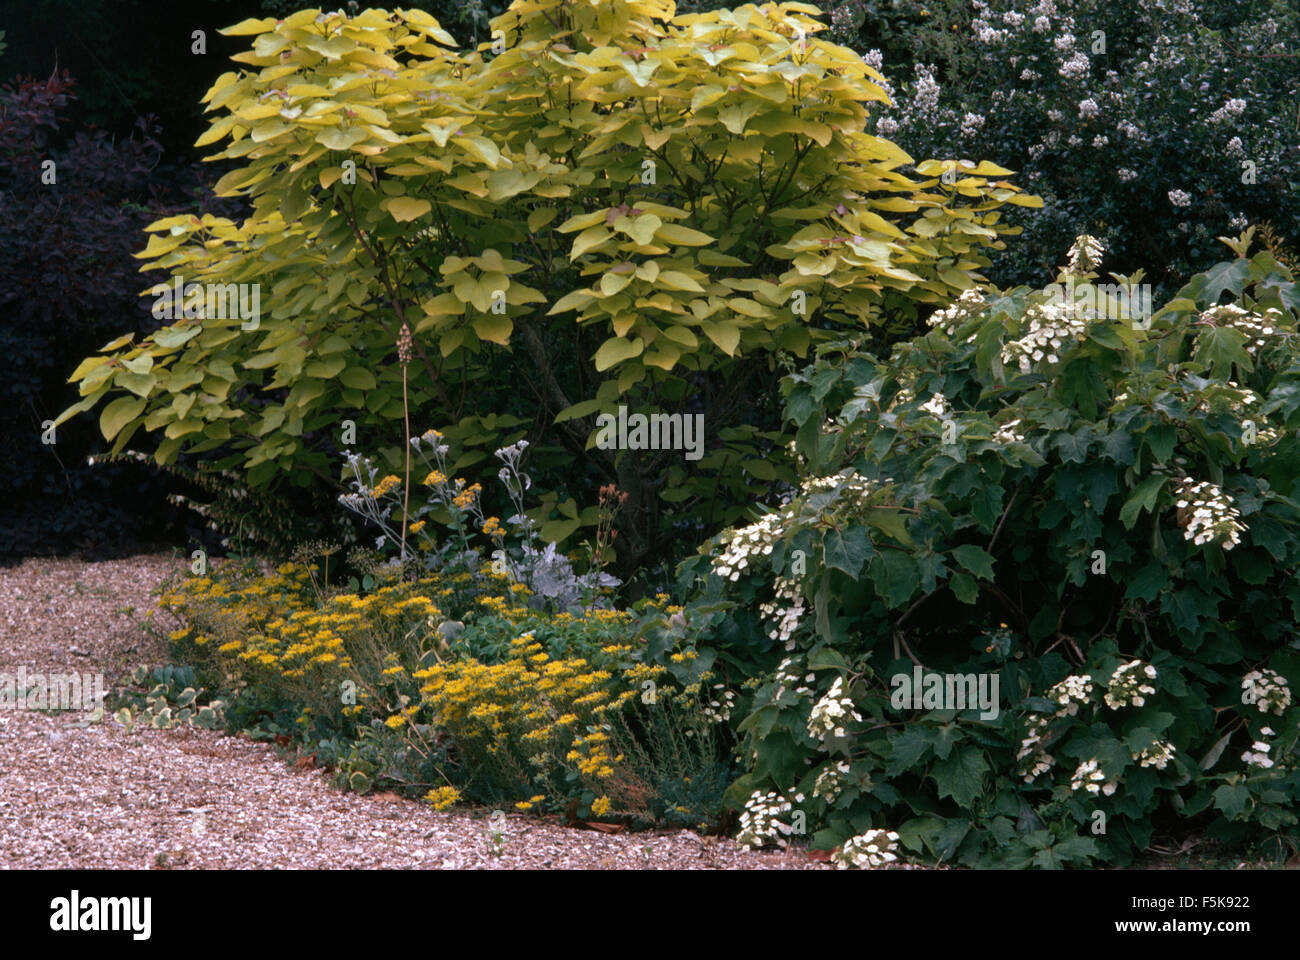 Catalpa-Baum und eine weiß blühende Strauch in einer Rabatte mit niedrig wachsenden coreopsis Stockfoto